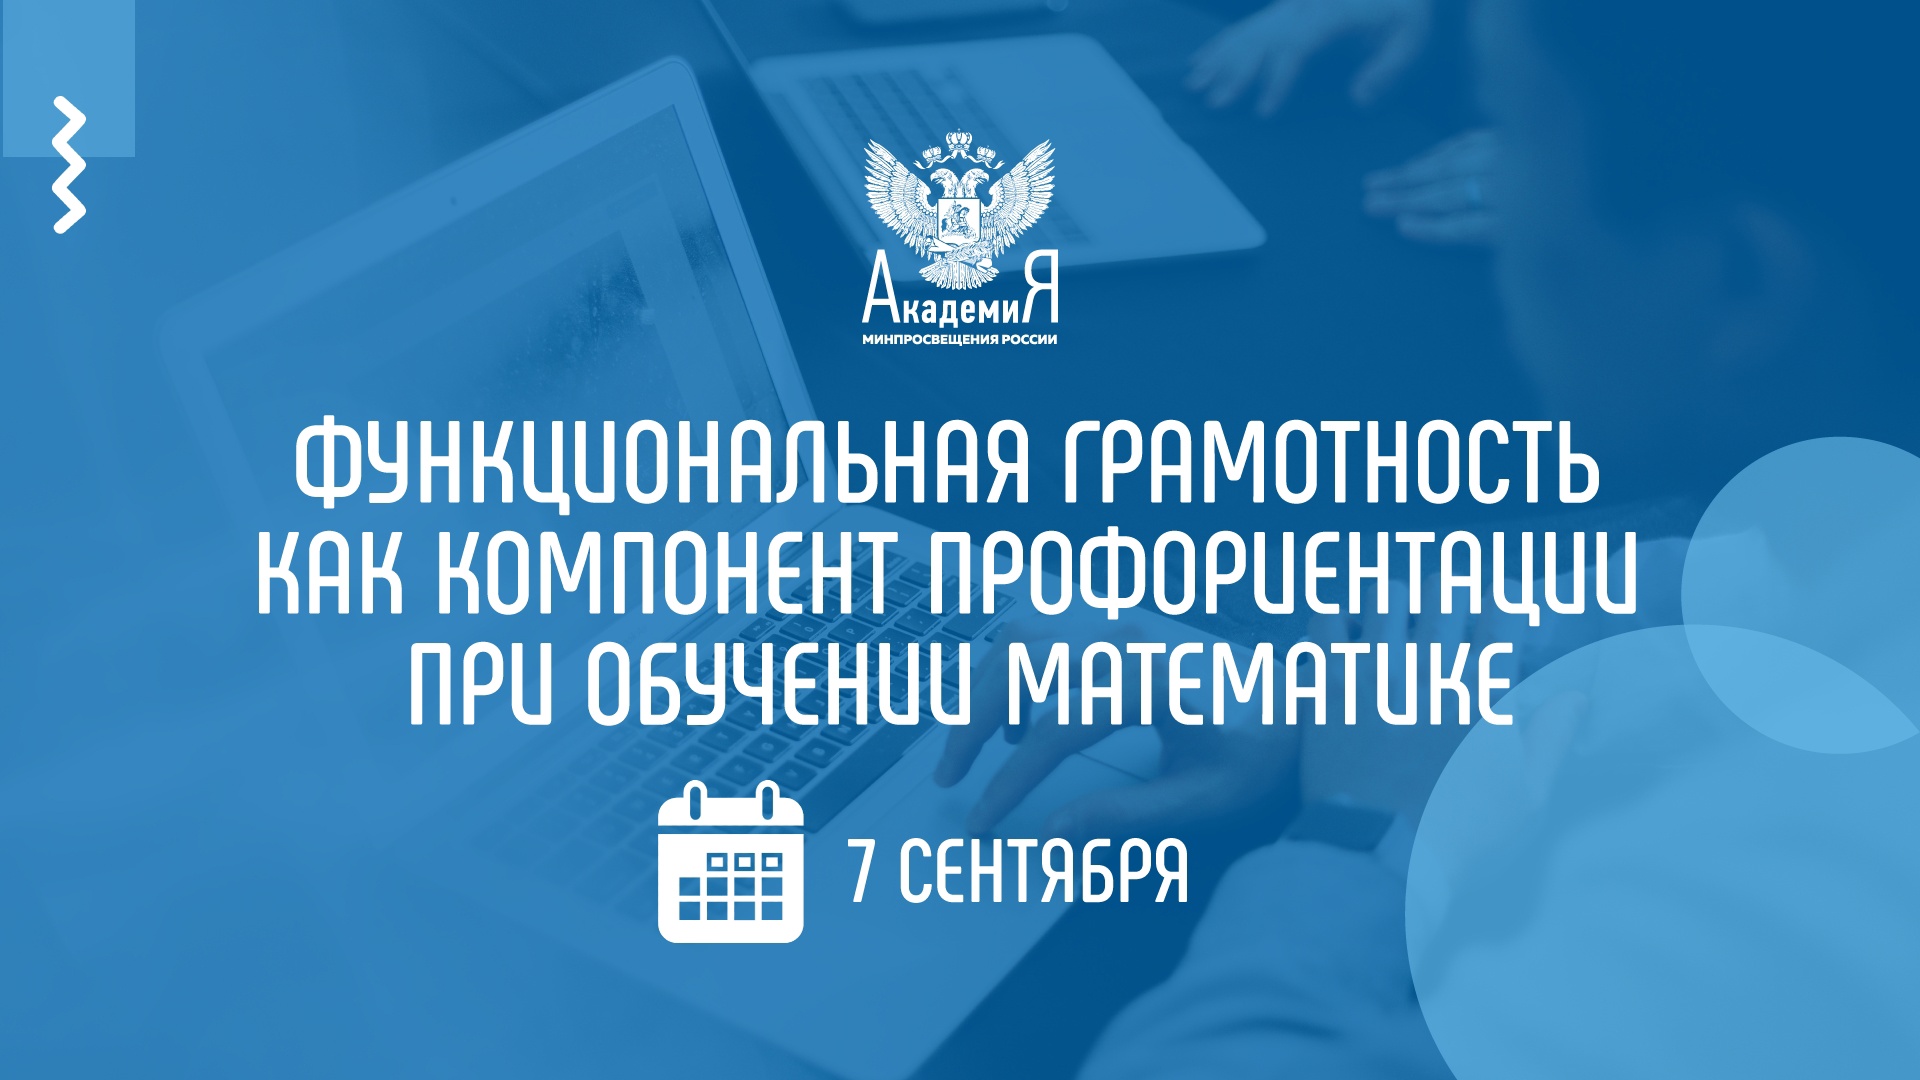 На вебинаре Академии Минпросвещения России расскажут о профориентации при обучении математике 